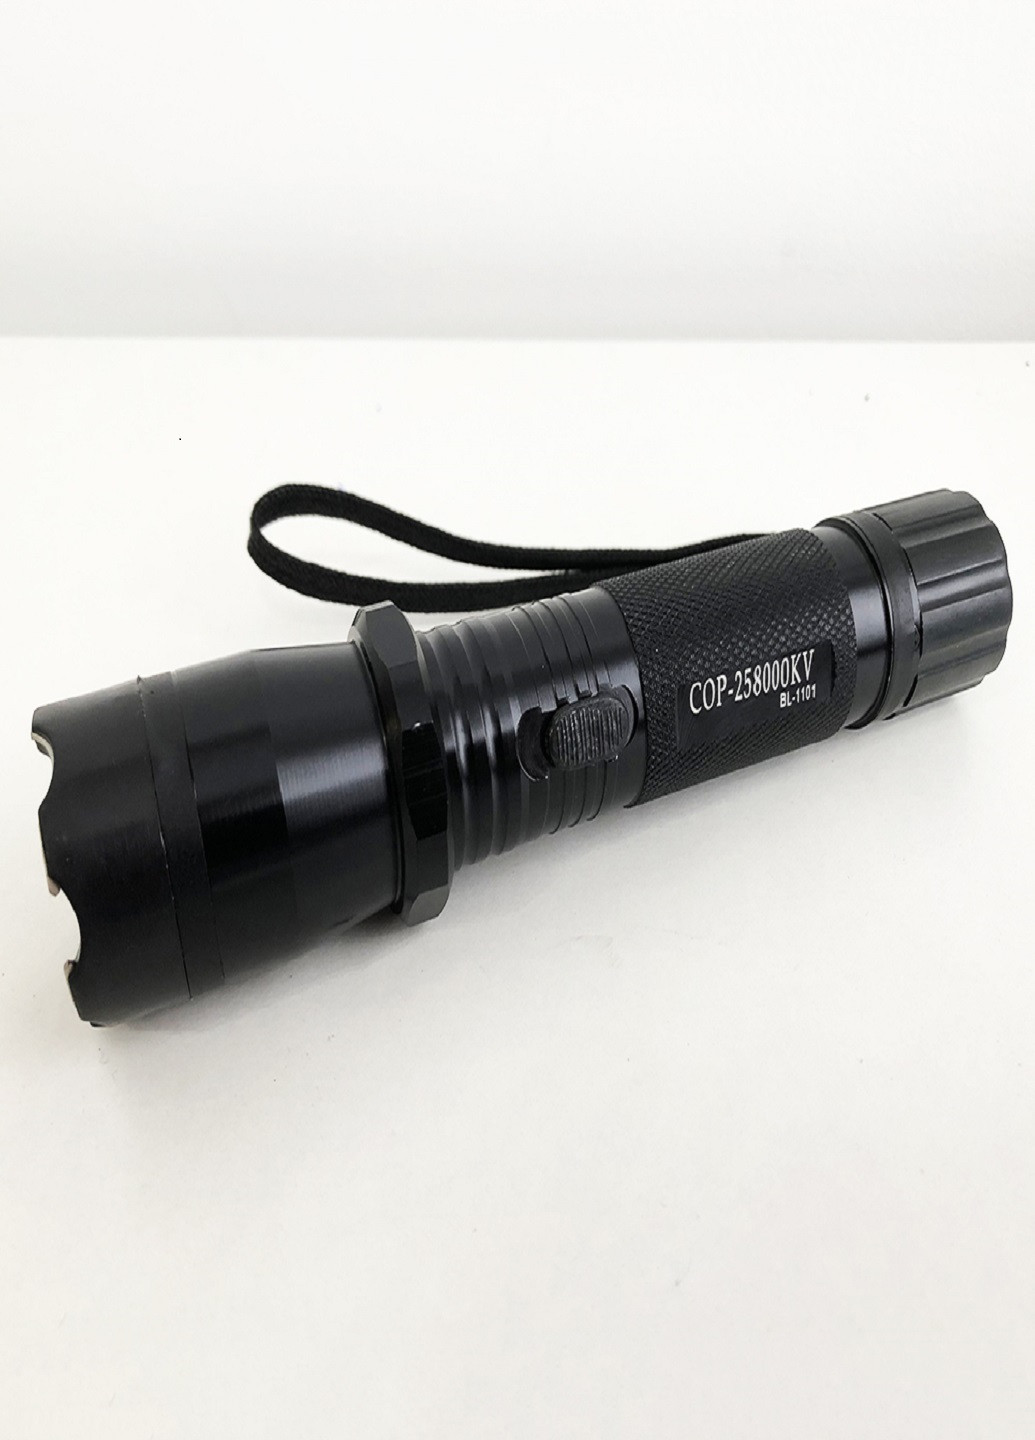 Фонарик BL 1101 c отпугивателем аккумуляторный фонарик для самозащиты VTech (253336539)